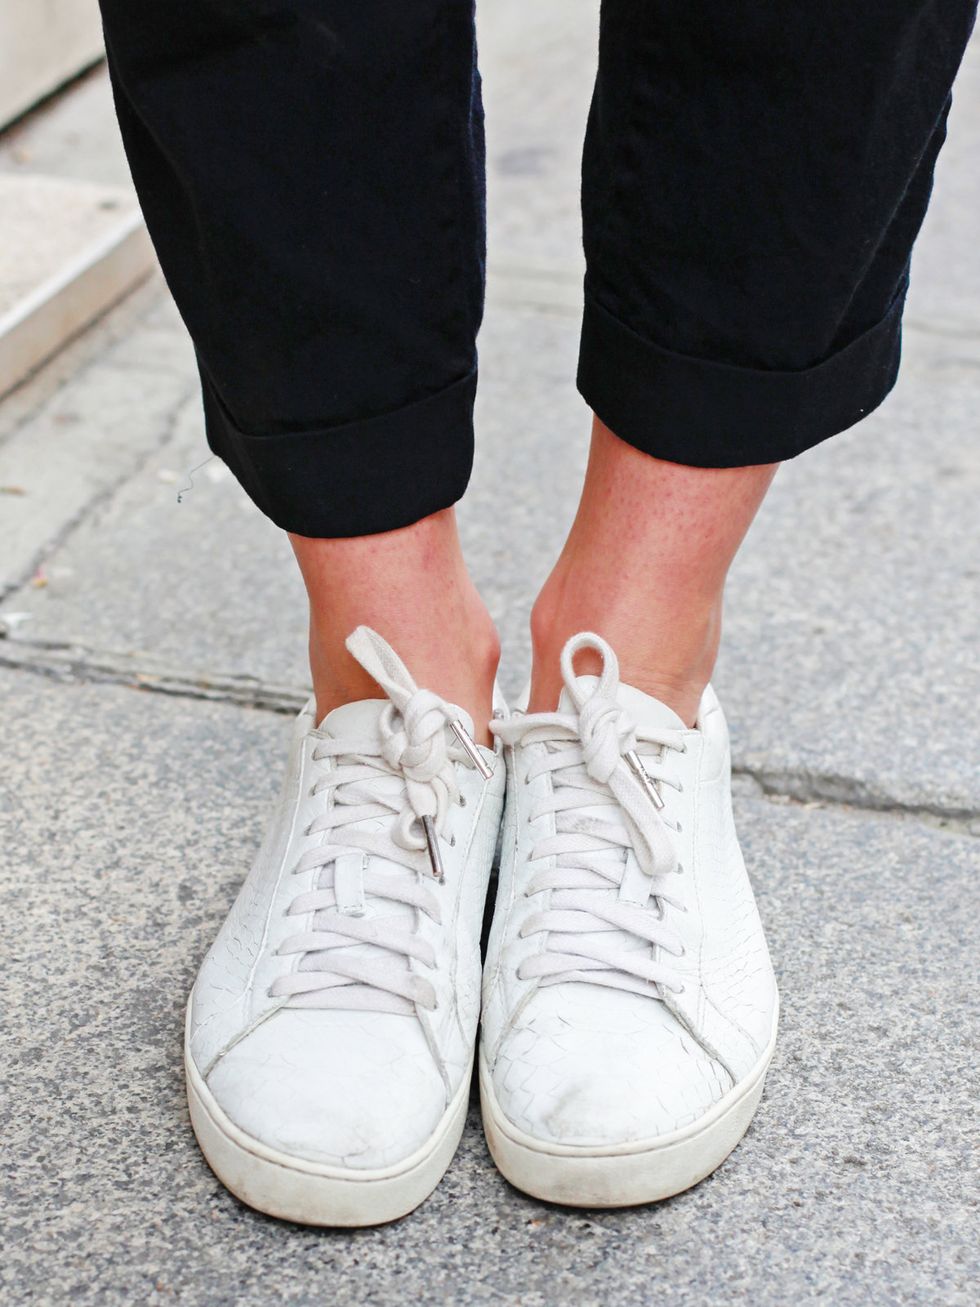 Footwear, Shoe, White, Human leg, Style, Fashion, Black, Sneakers, Grey, Street fashion, 